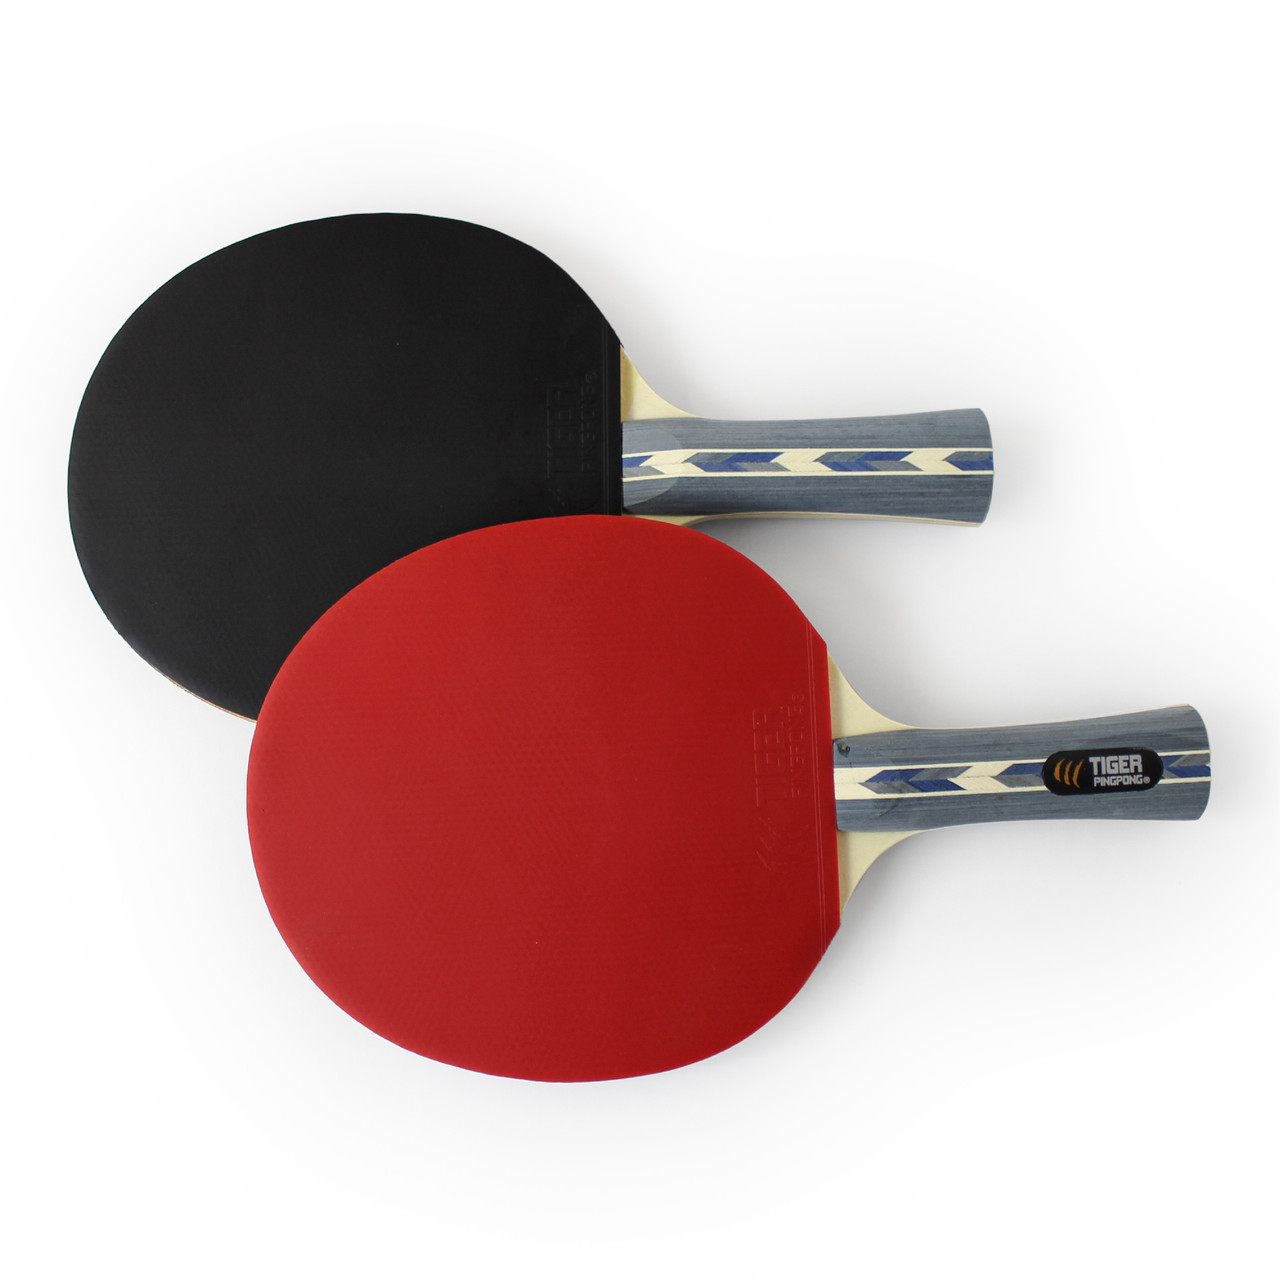 Achetez en gros Article 3006 Paddles De Ping-pong Personnalisés